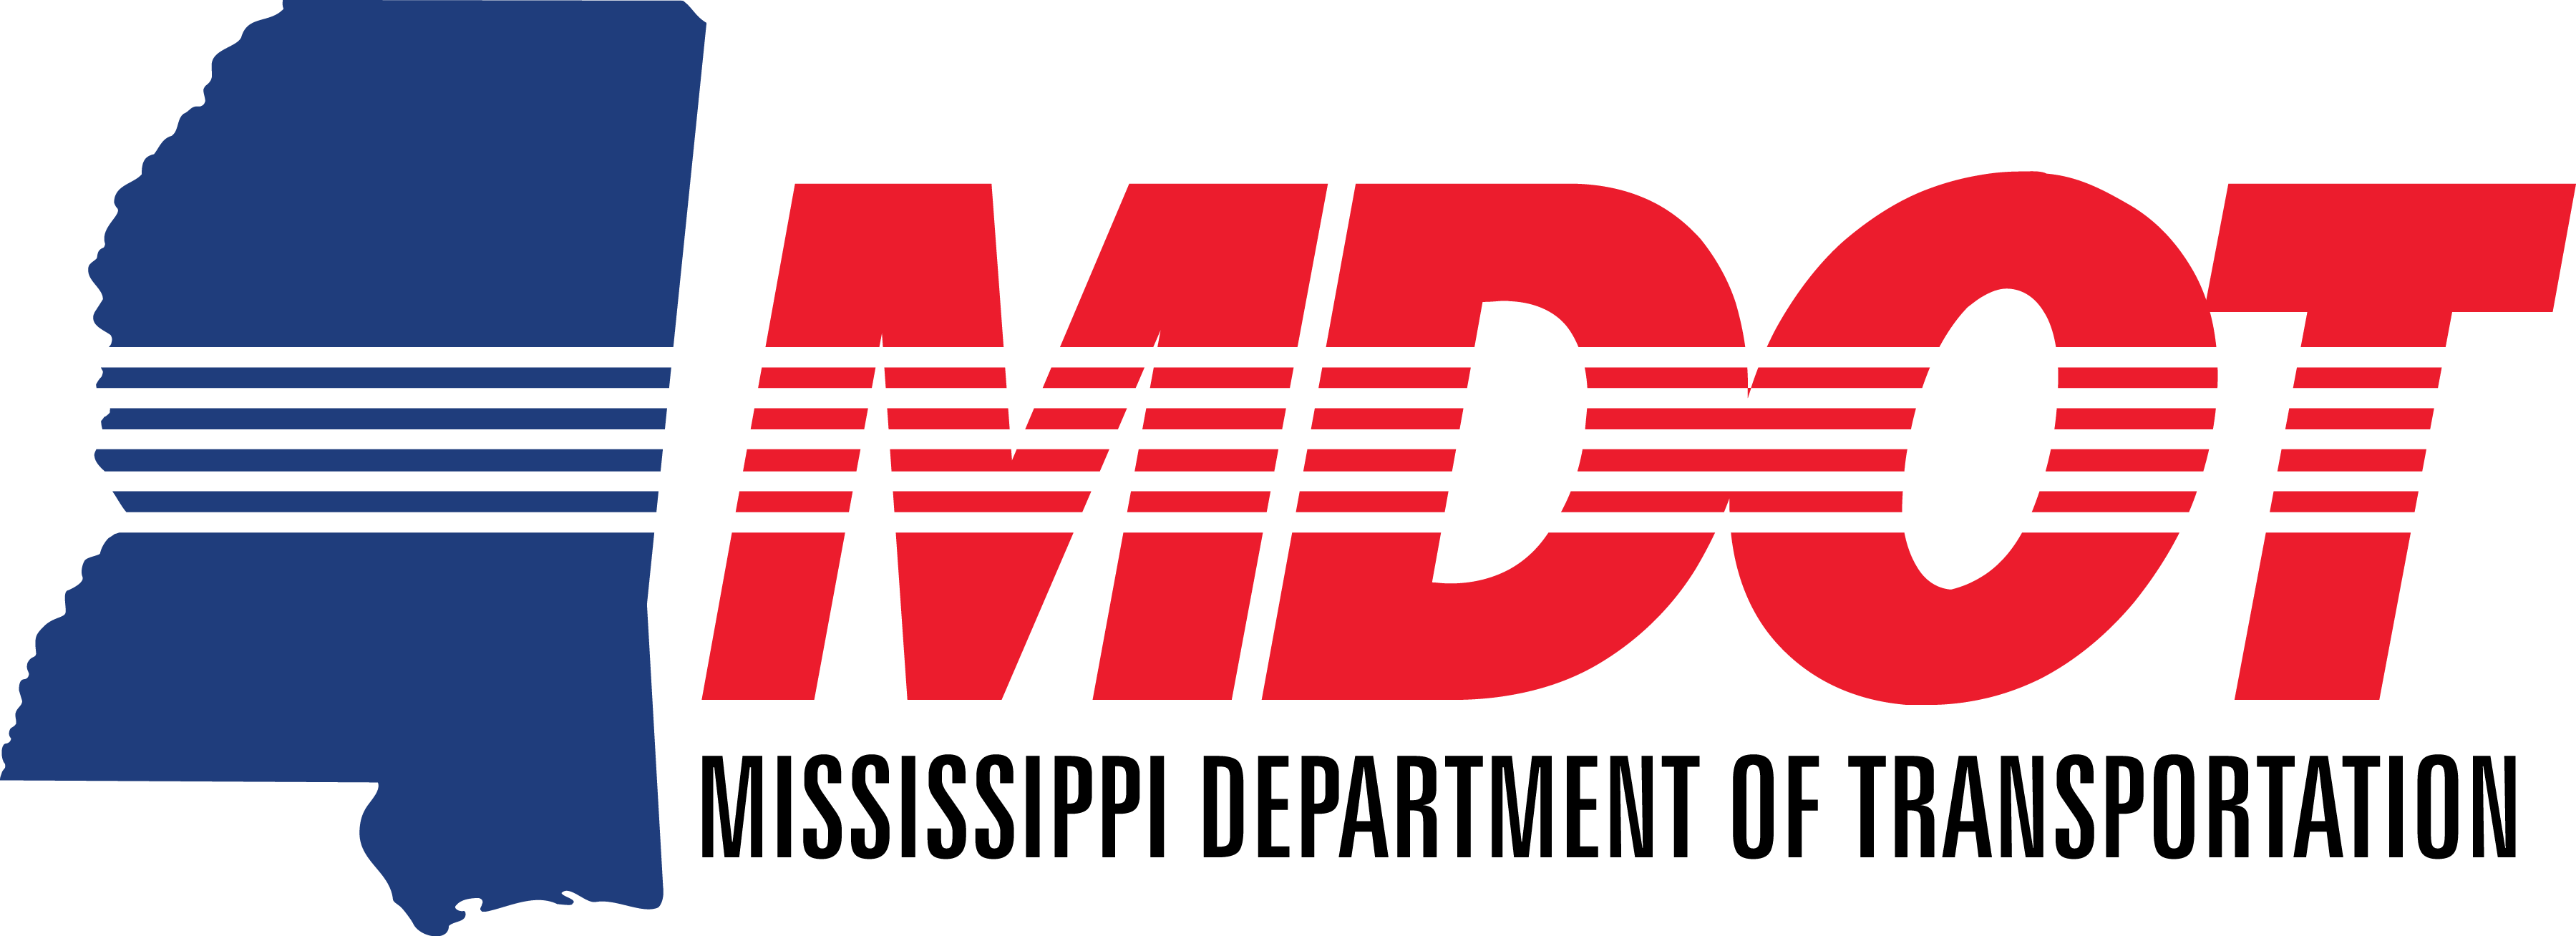 MDOT Logo